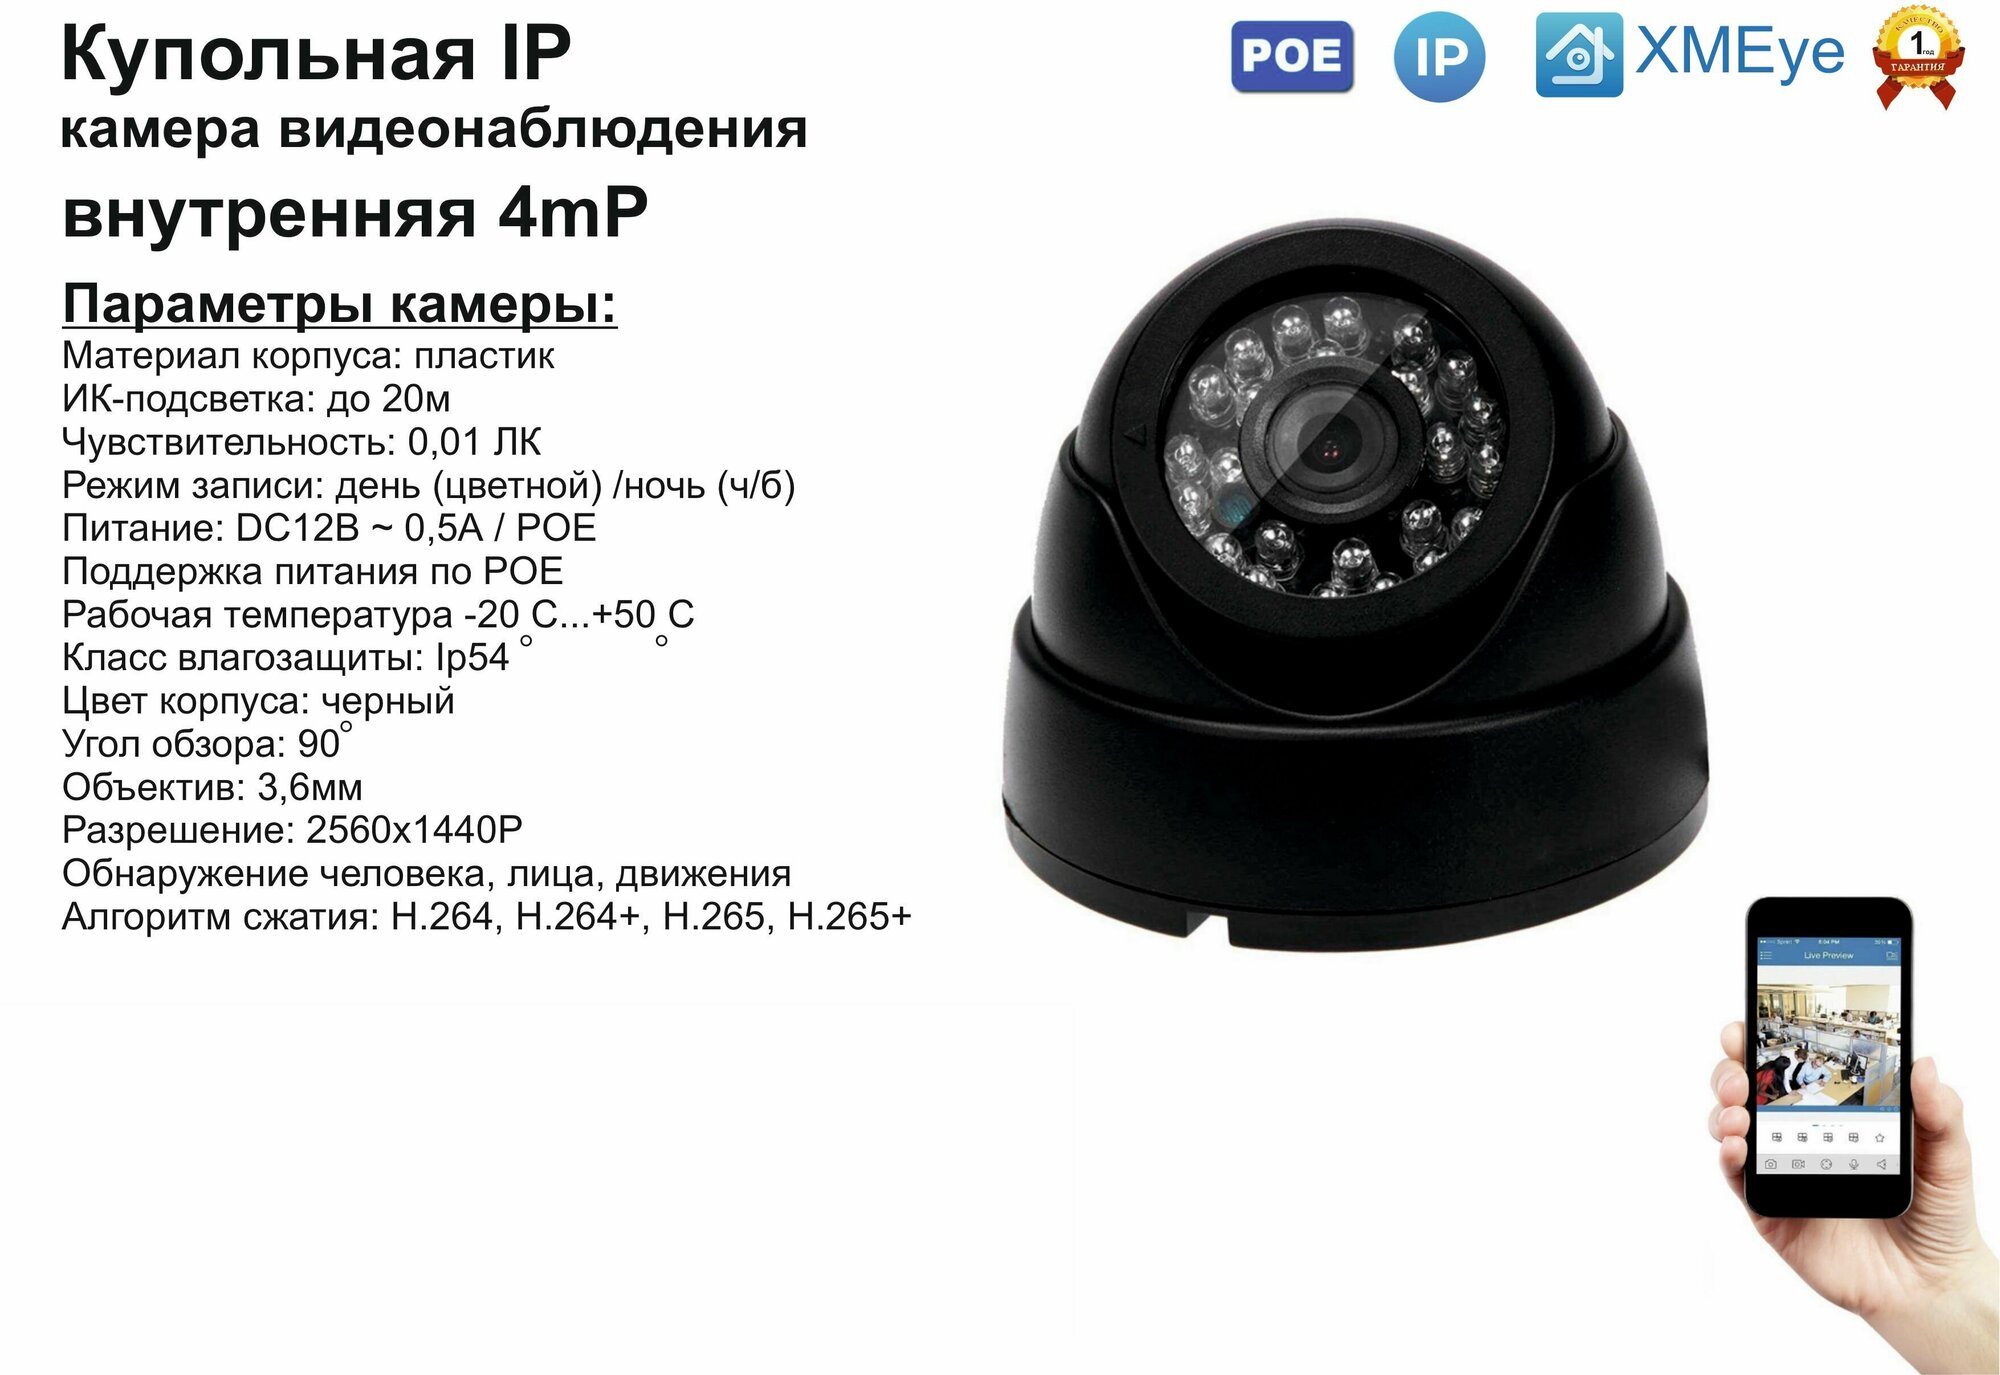 DVB300IP4MP(POE). Внутренняя IP камера 4мП с ИК до 20м.